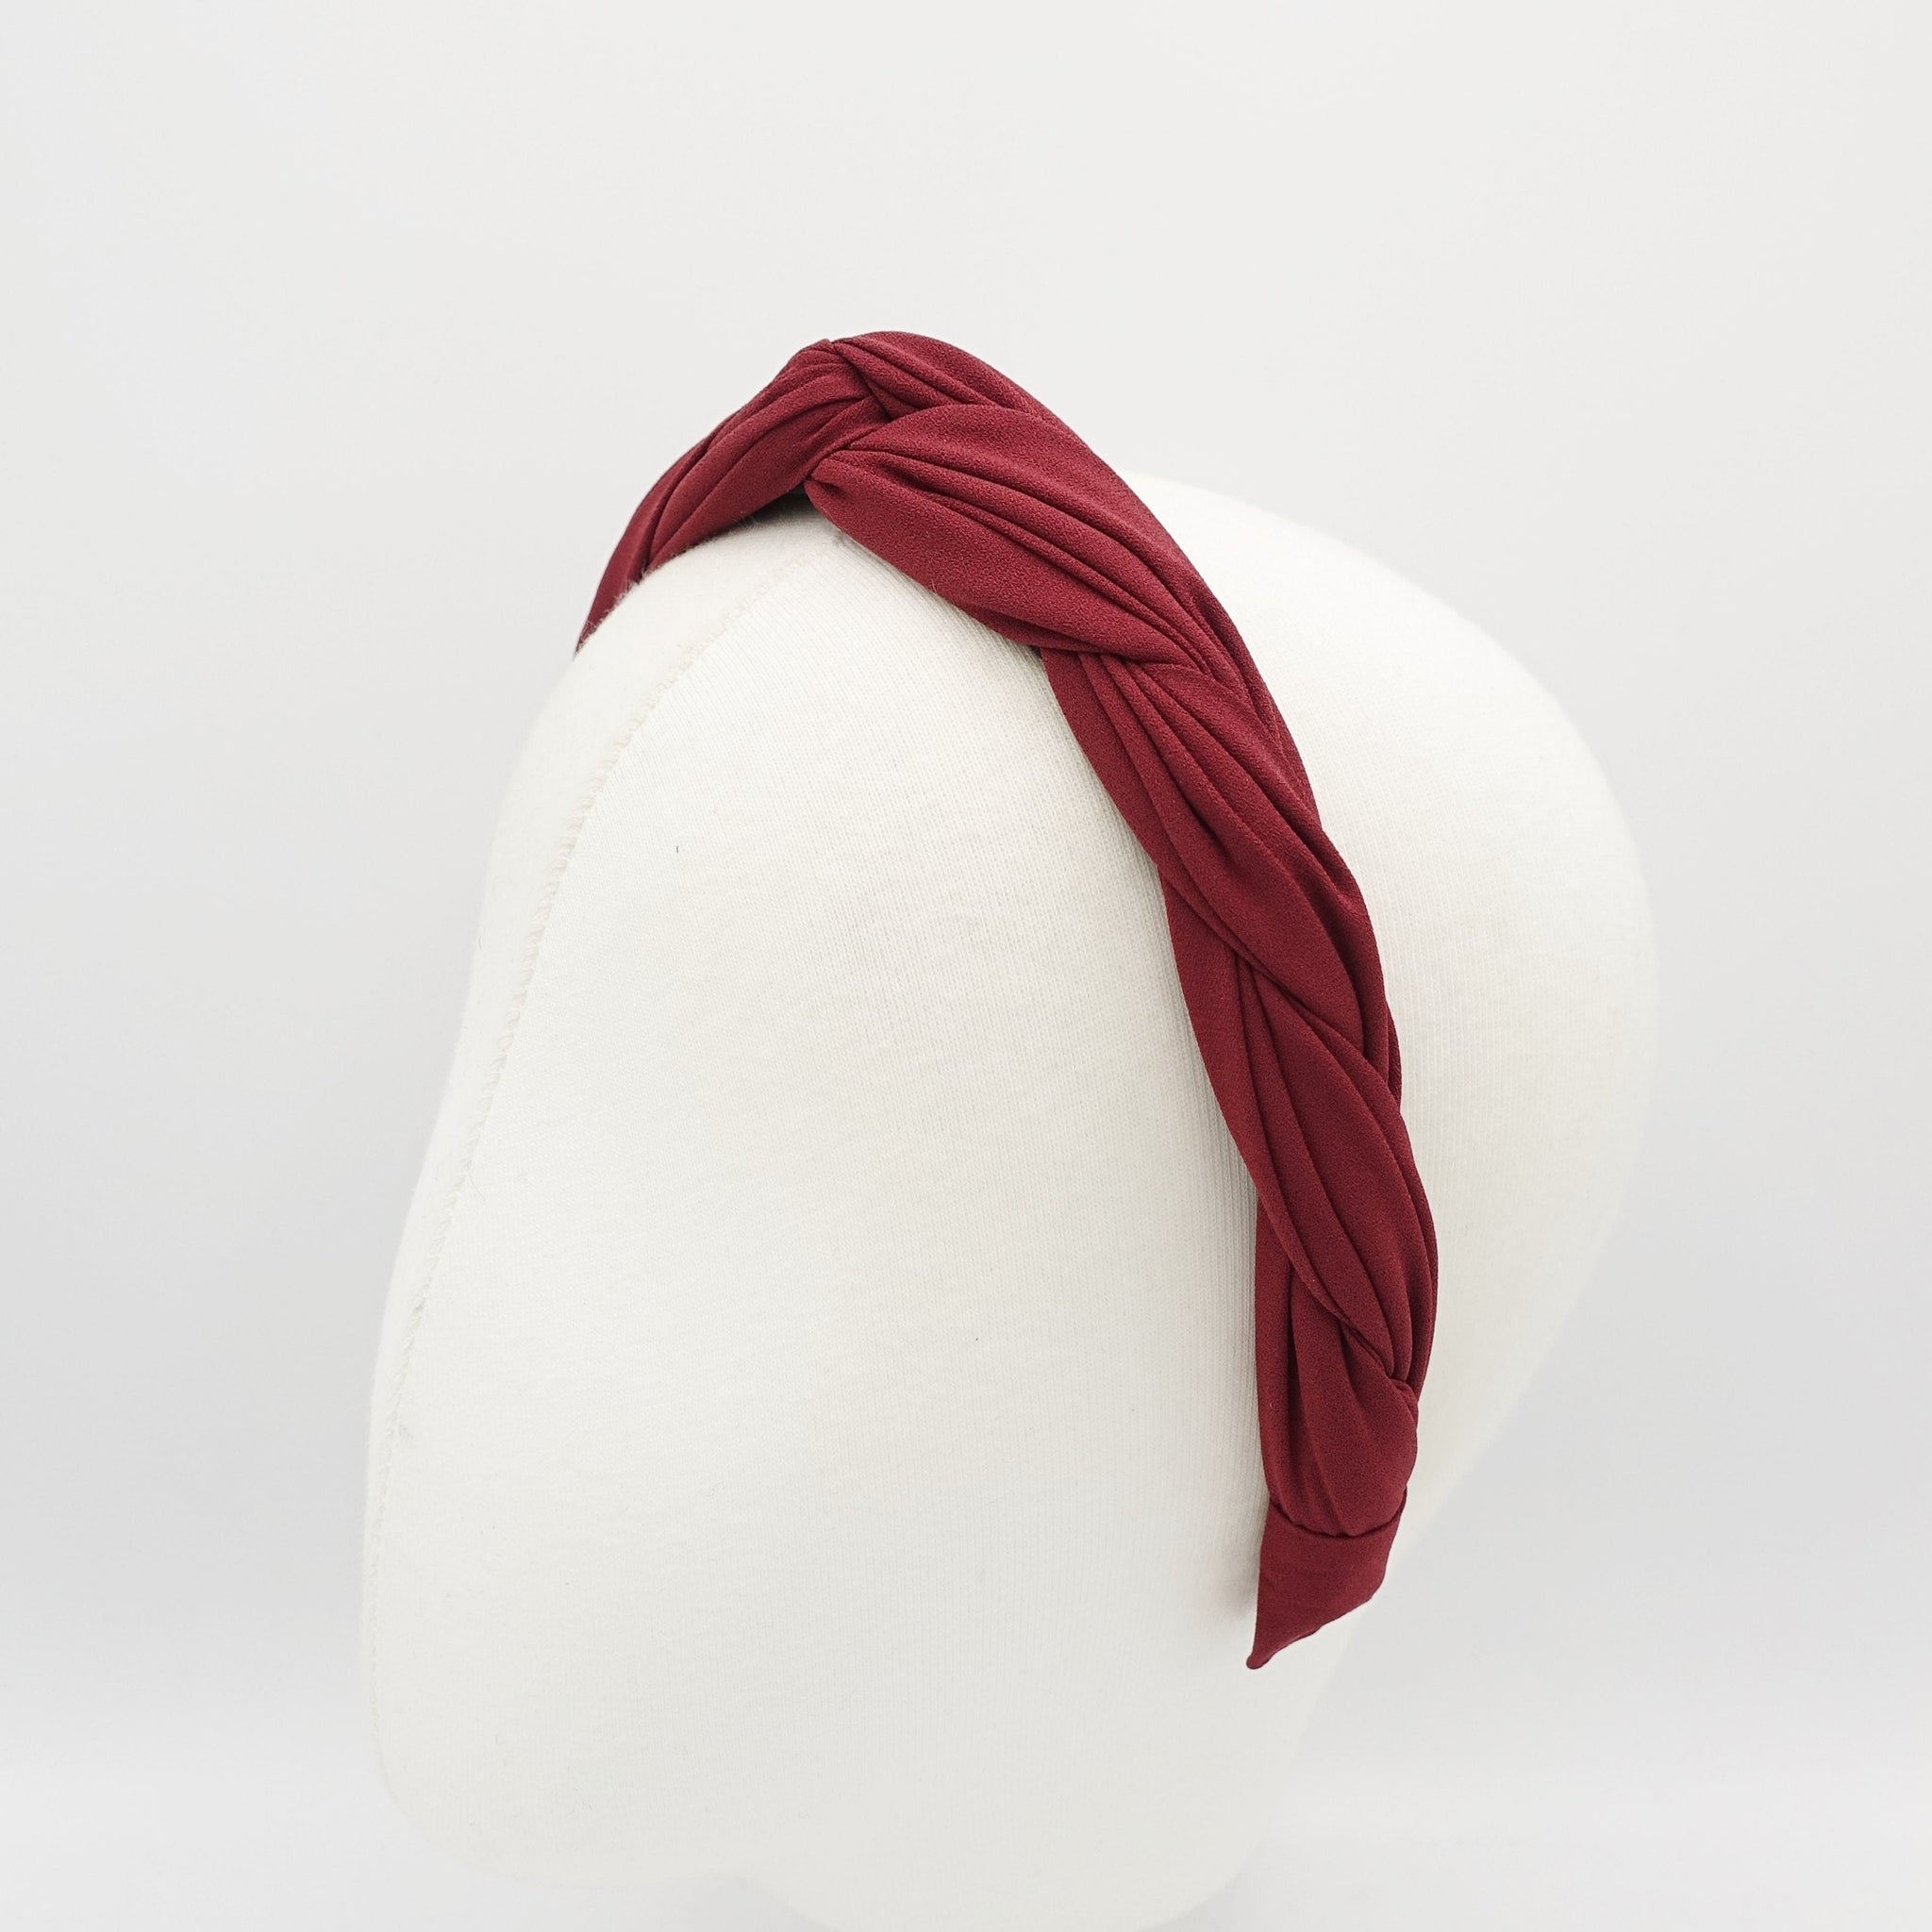 veryshine.com Dark gray chiffon cross 2 strand round braid headband for women